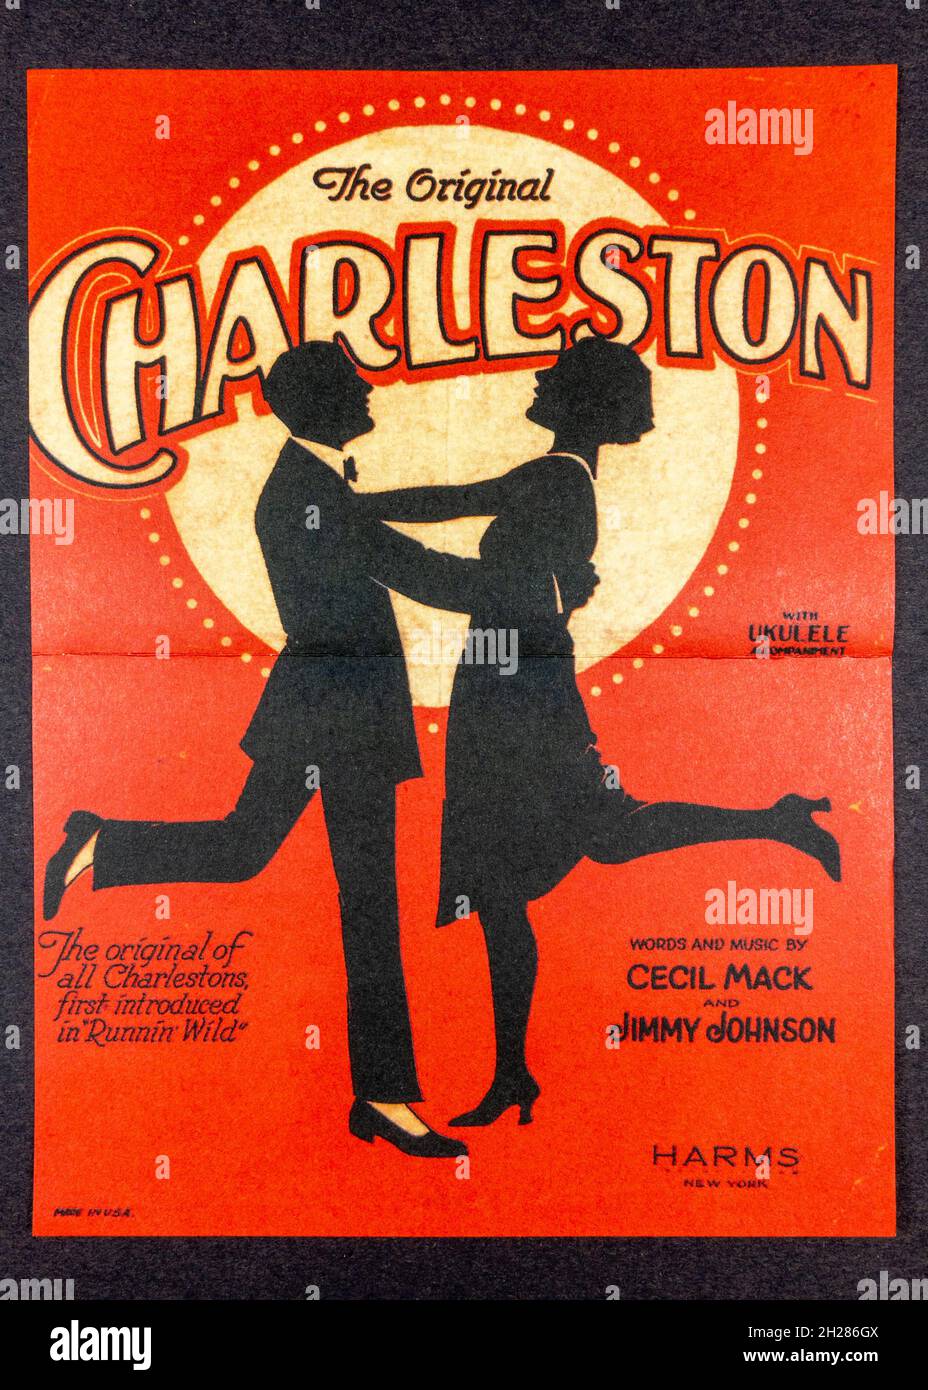 Eine Nachbildung einer Anzeige von 1920s, in der Cecil Mack & James Johnson  erklärt, wie man das Original Charleston macht Stockfotografie - Alamy